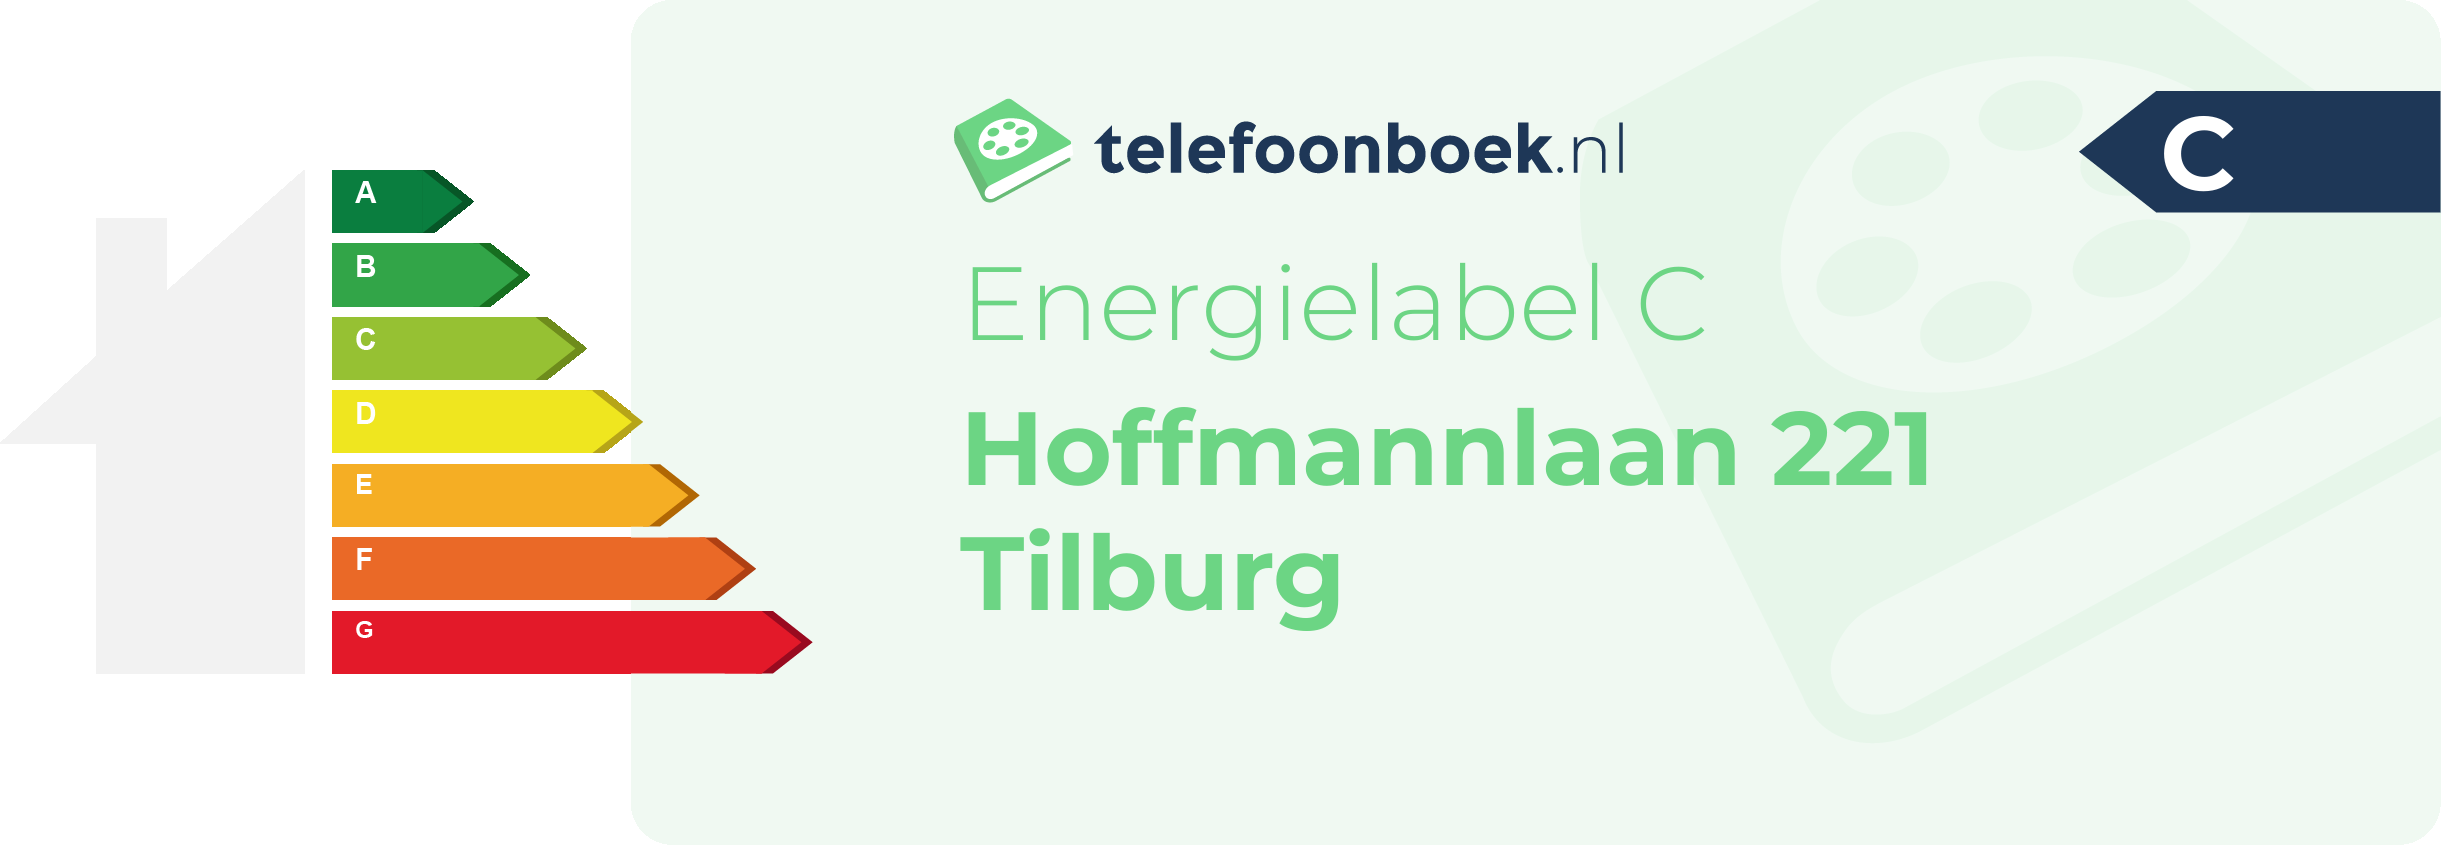 Energielabel Hoffmannlaan 221 Tilburg